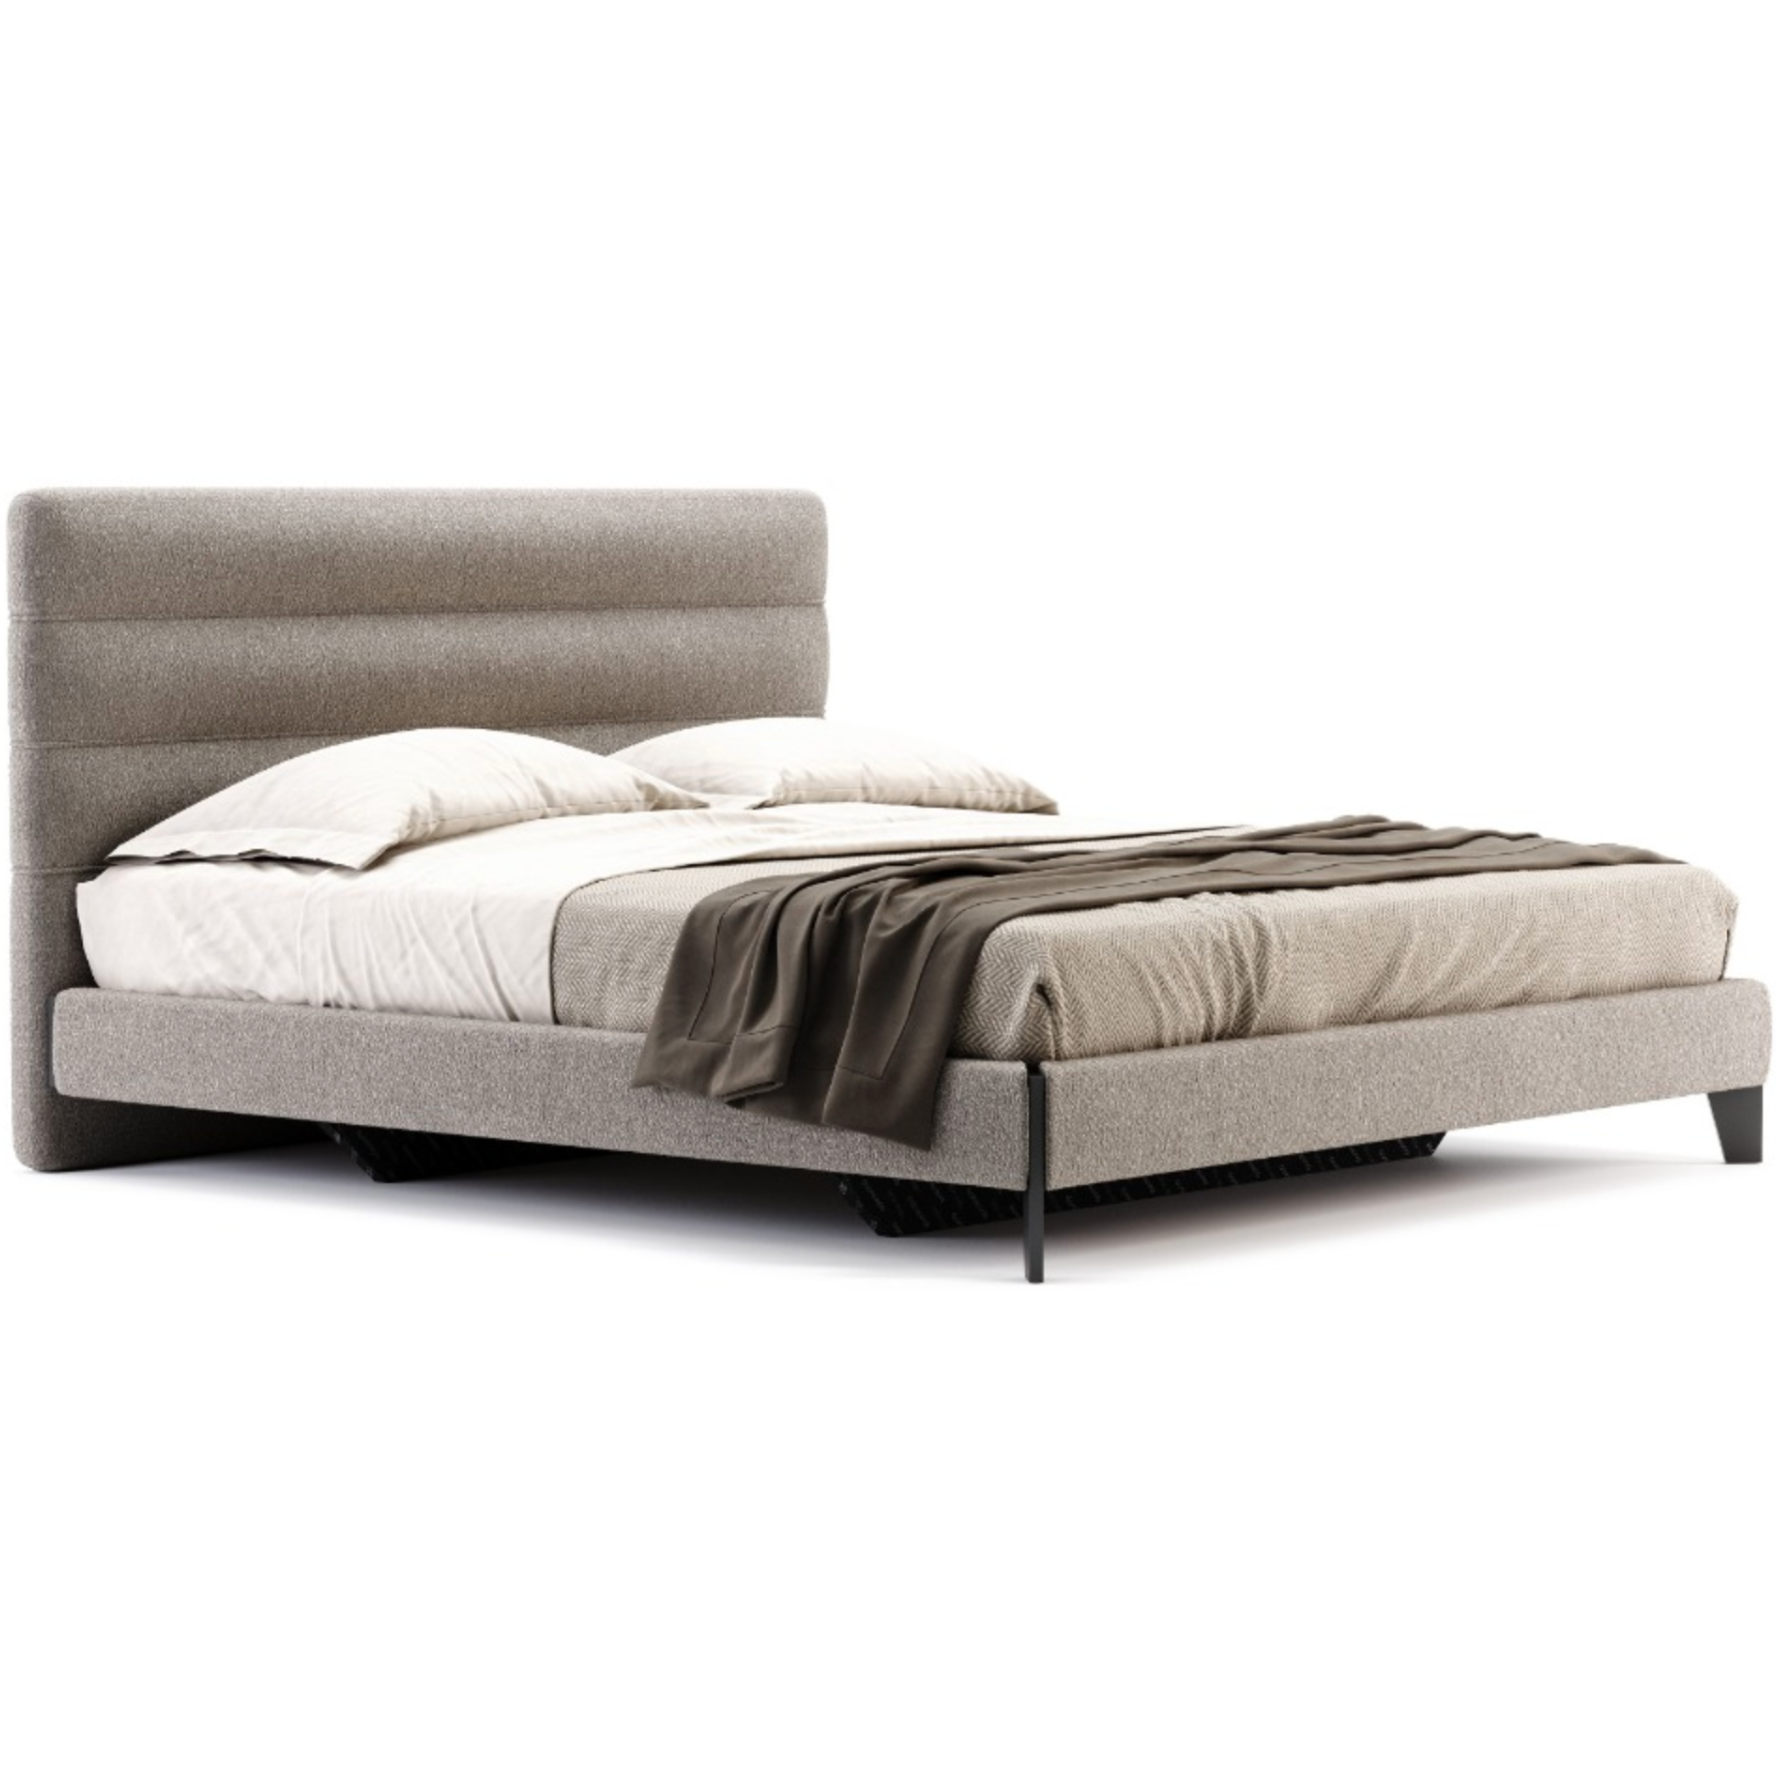 Domkapa Yumi Super King Bed - Customisable | Modern Furniture + Decor